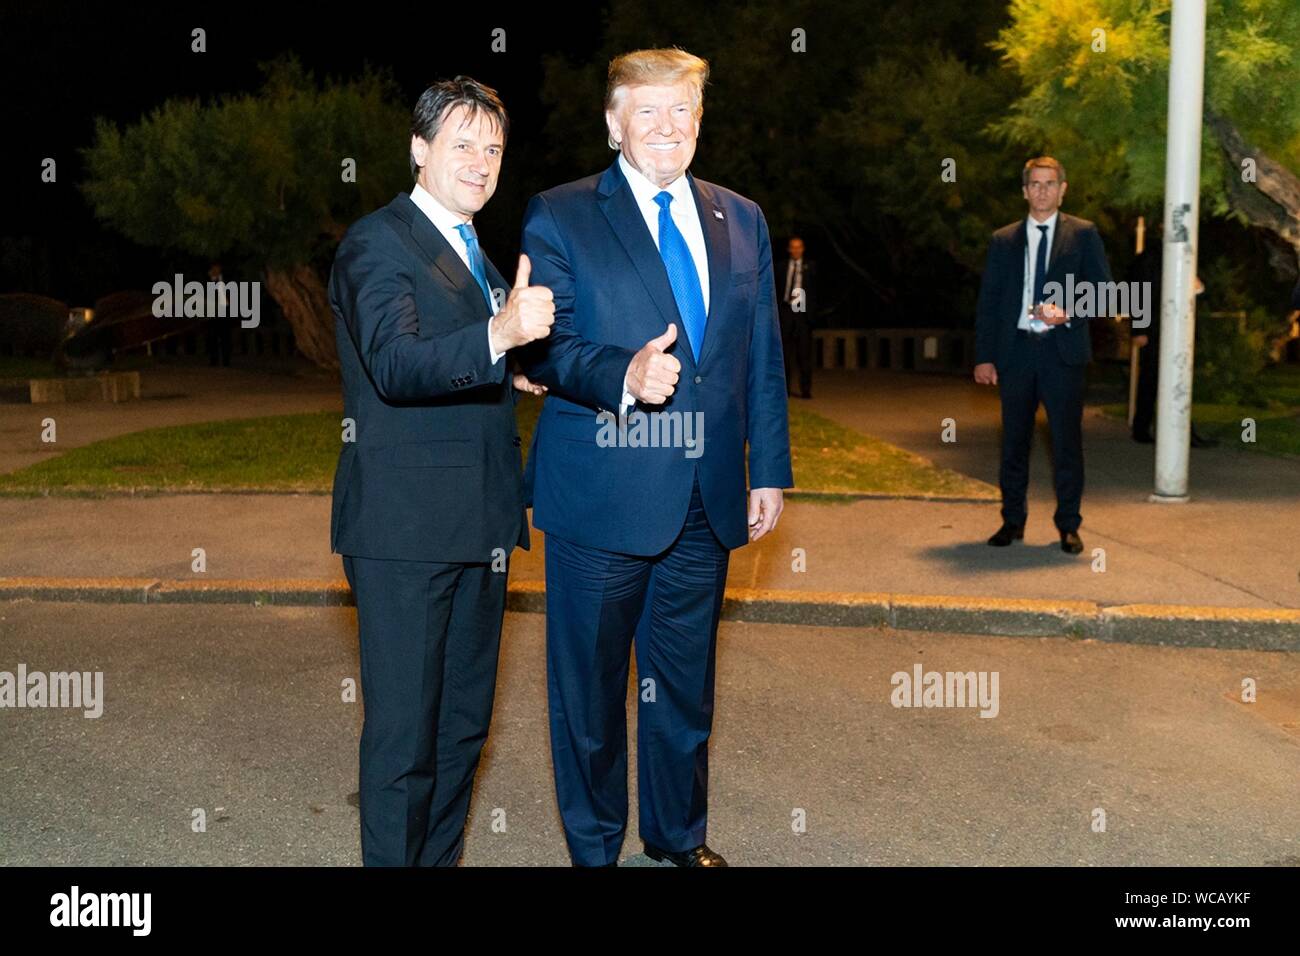 Stati Uniti Presidente Donald Trump,destra, pone con il Primo Ministro italiano Giuseppe Conte a seguito del G7 dei Capi di Stato e di governo la cena presso il faro di Biarritz Agosto 24, 2019 a Biarritz, Francia. Foto Stock